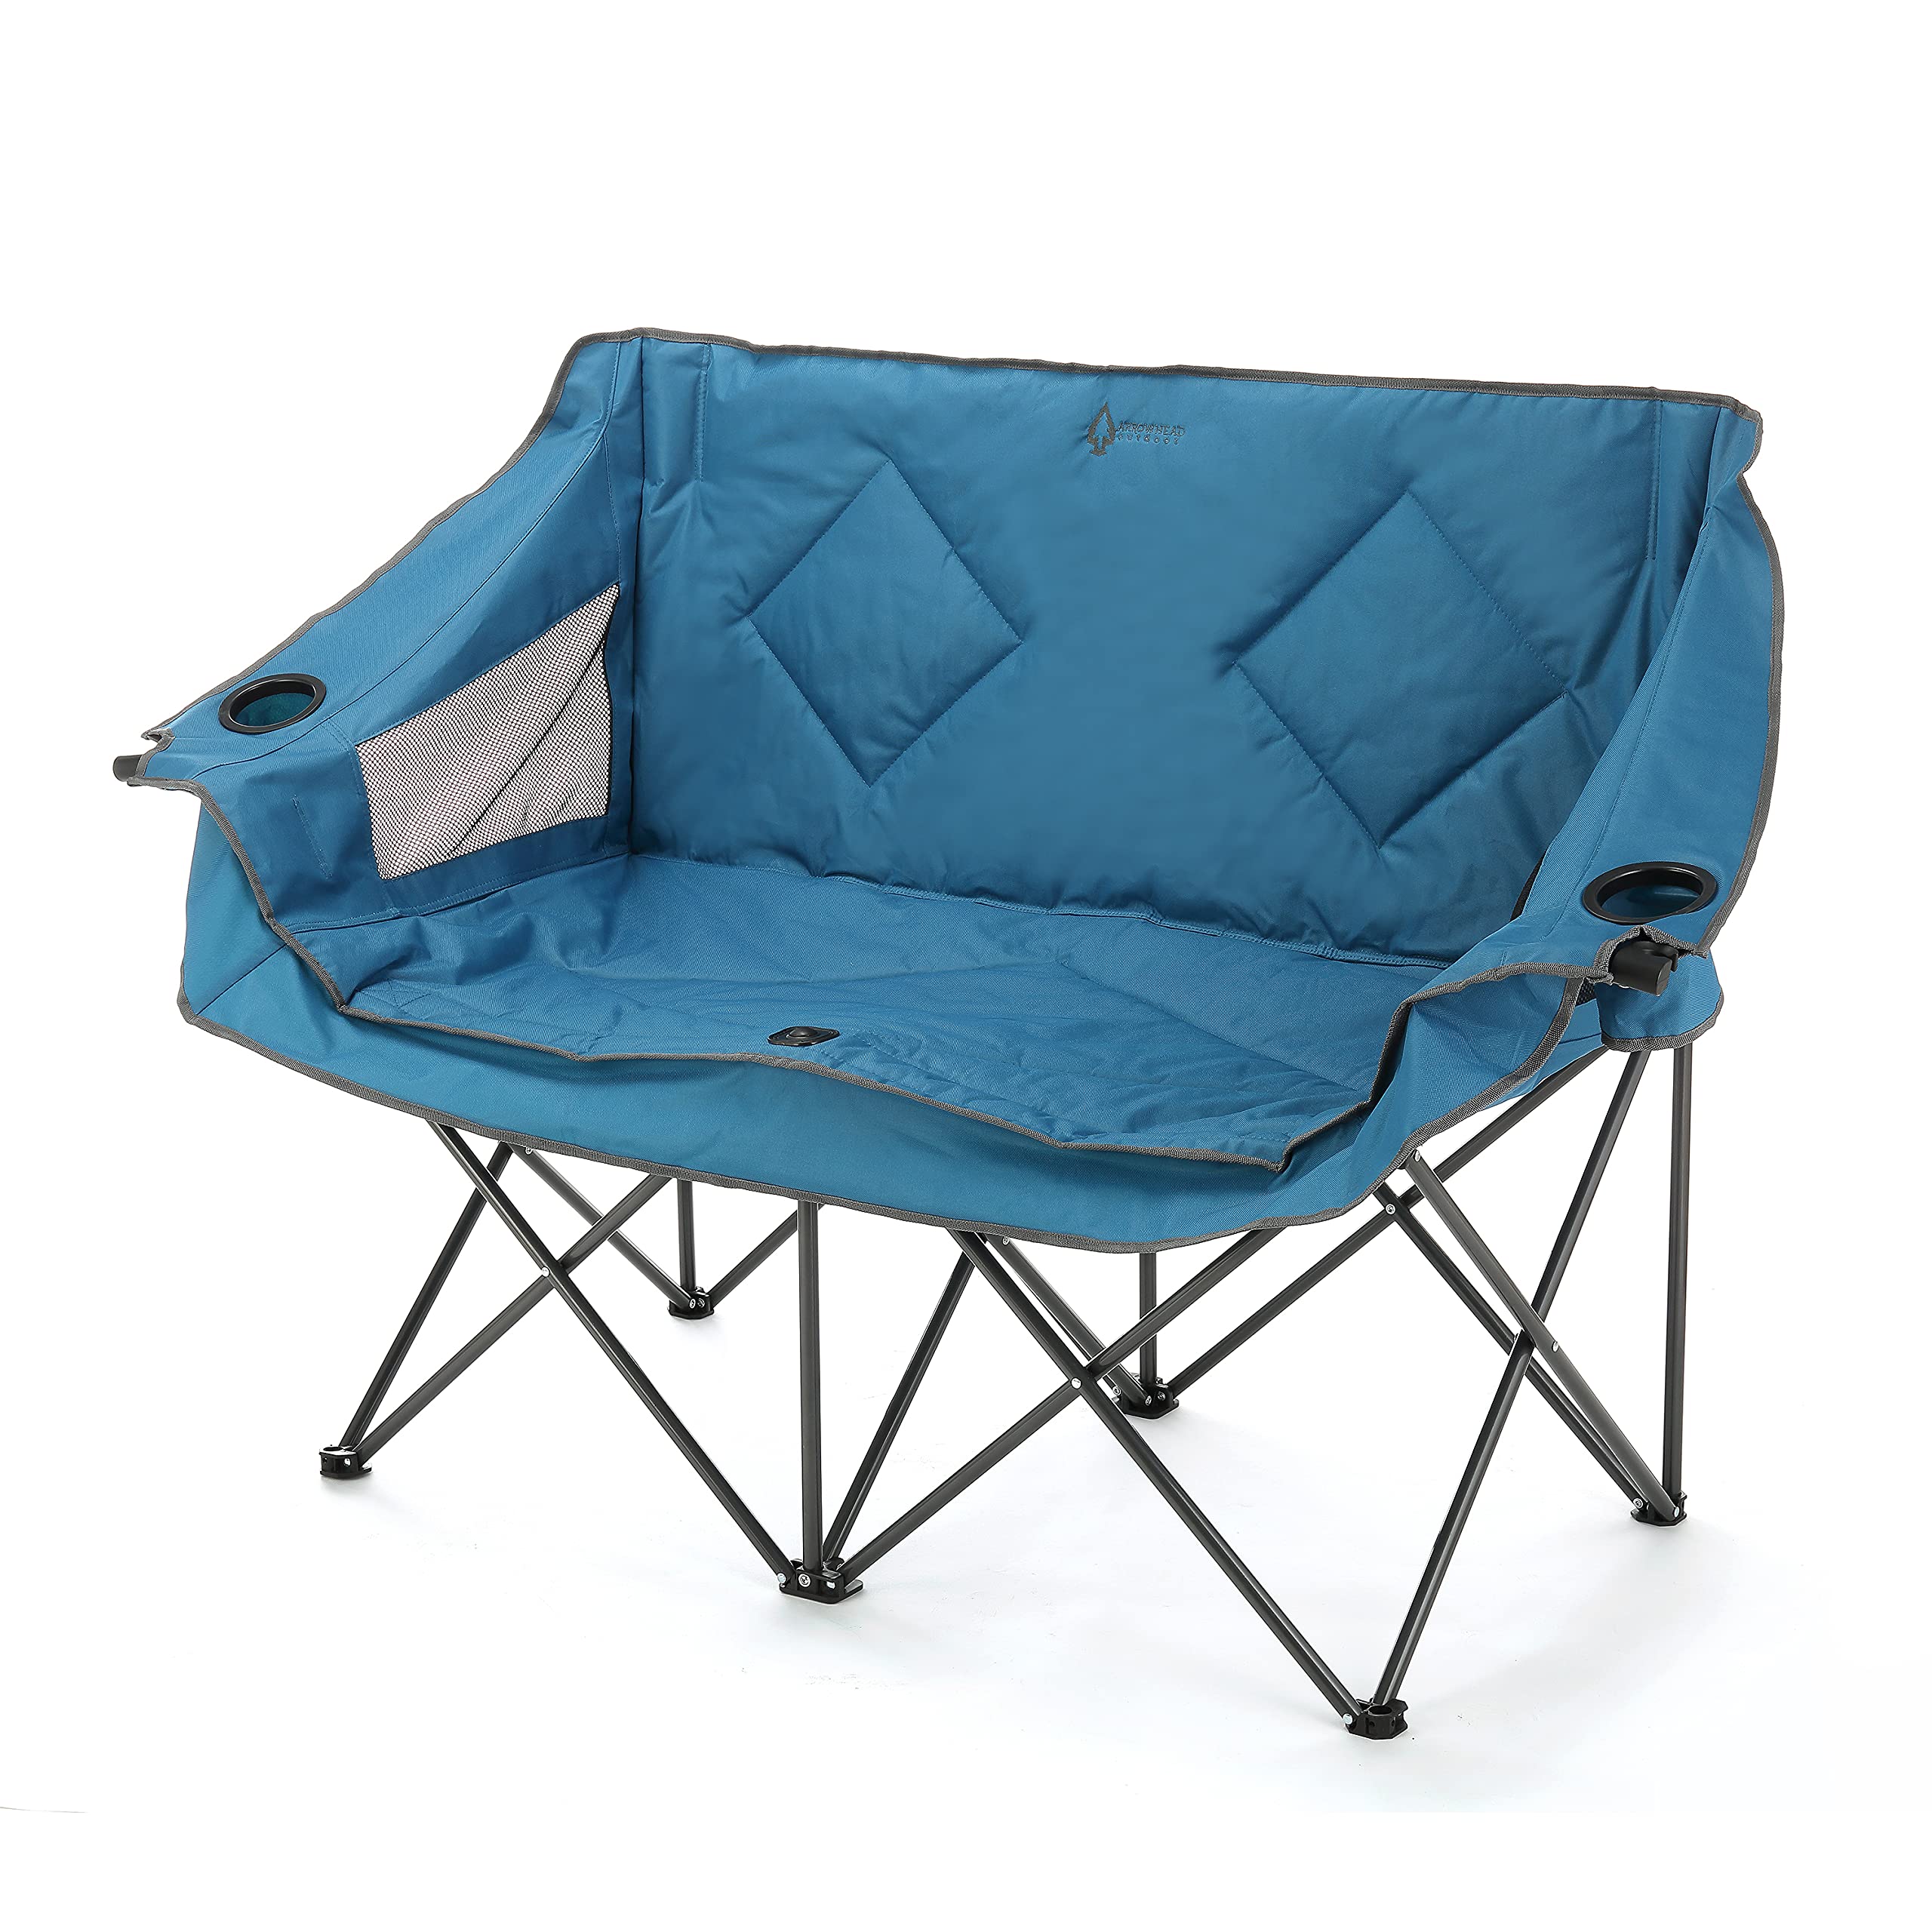 ARROWHEAD OUTDOOR 便携式折叠双人露营椅双人沙发带 2 个杯子和酒杯架、重型手提包、软垫座椅和扶手，支撑重量达 500 磅，美国支持